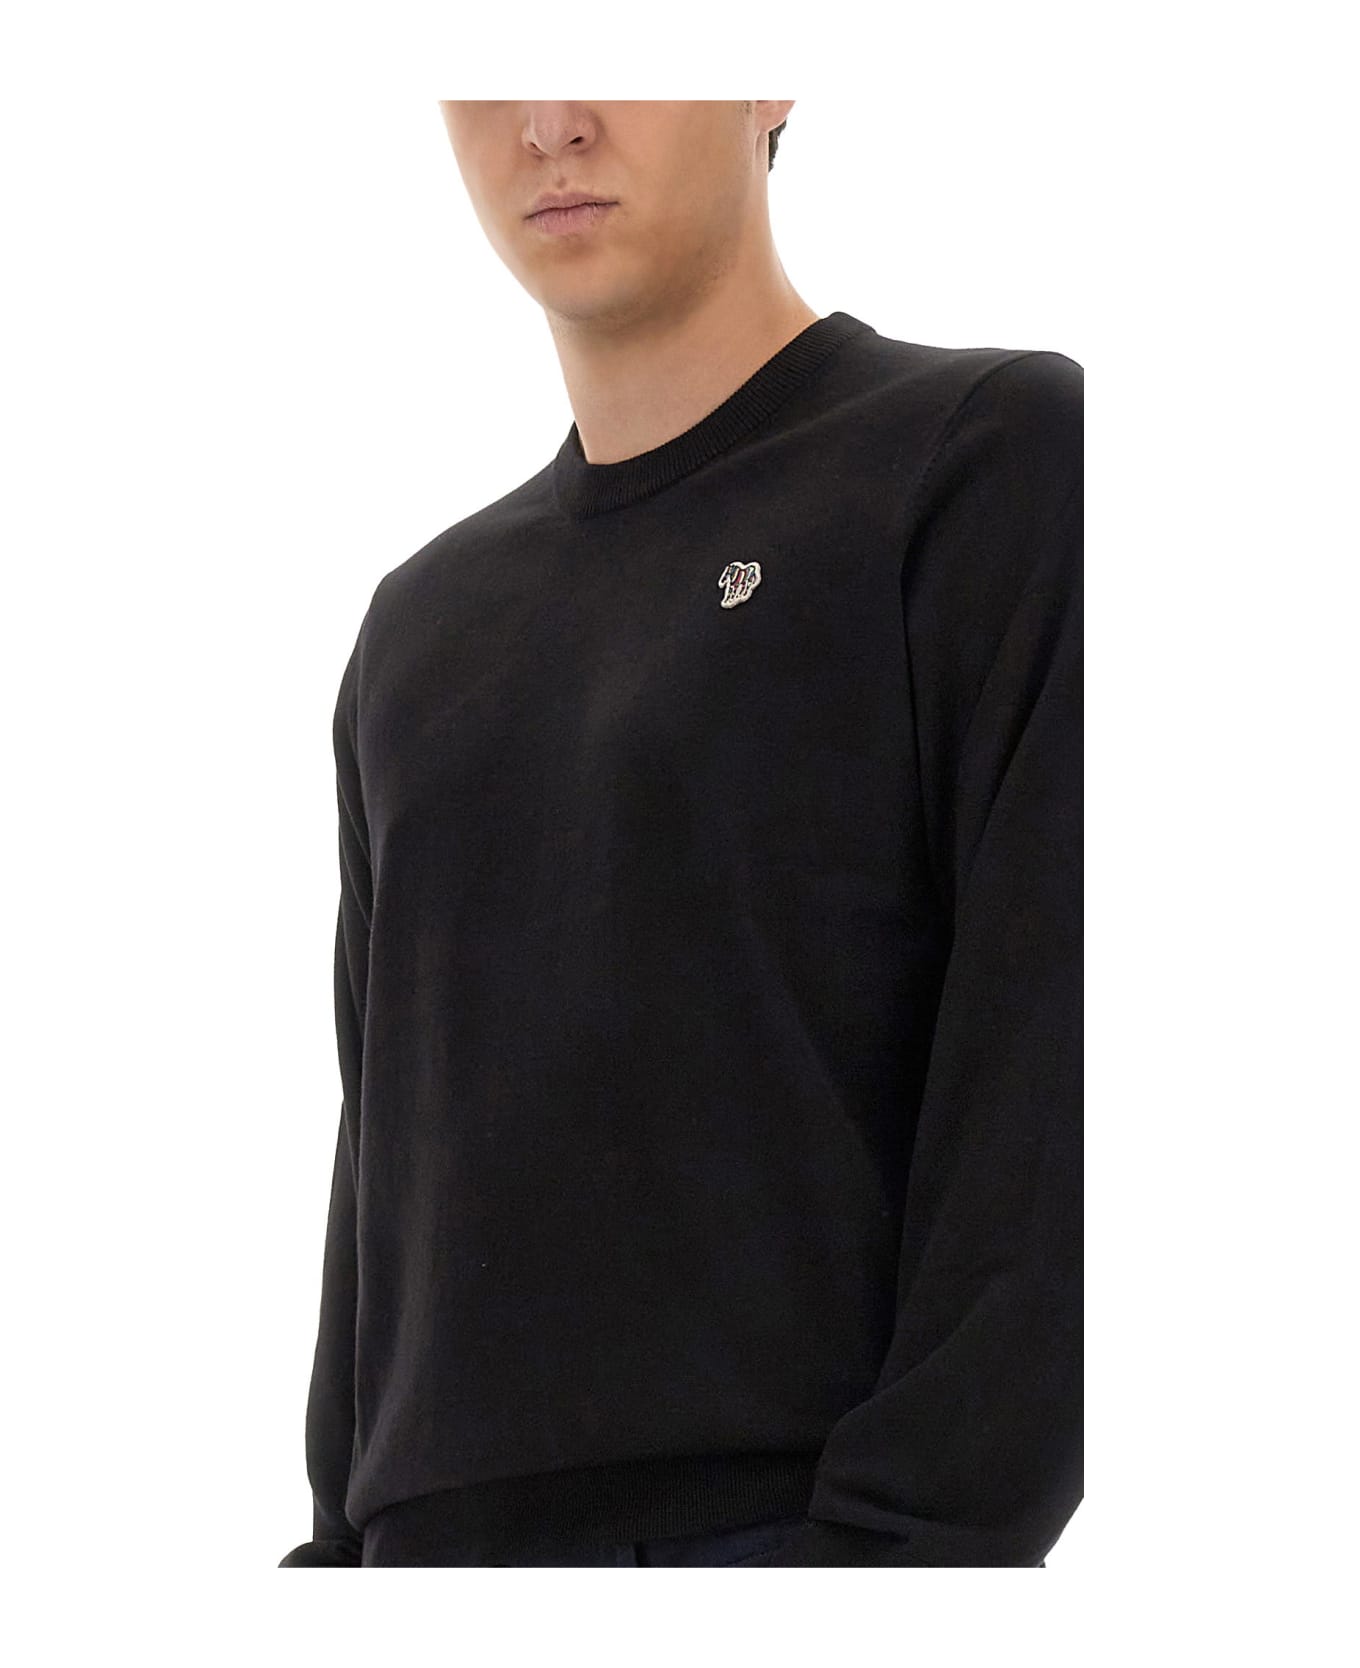 Paul Smith Zebra Patch Shirt - Black ニットウェア